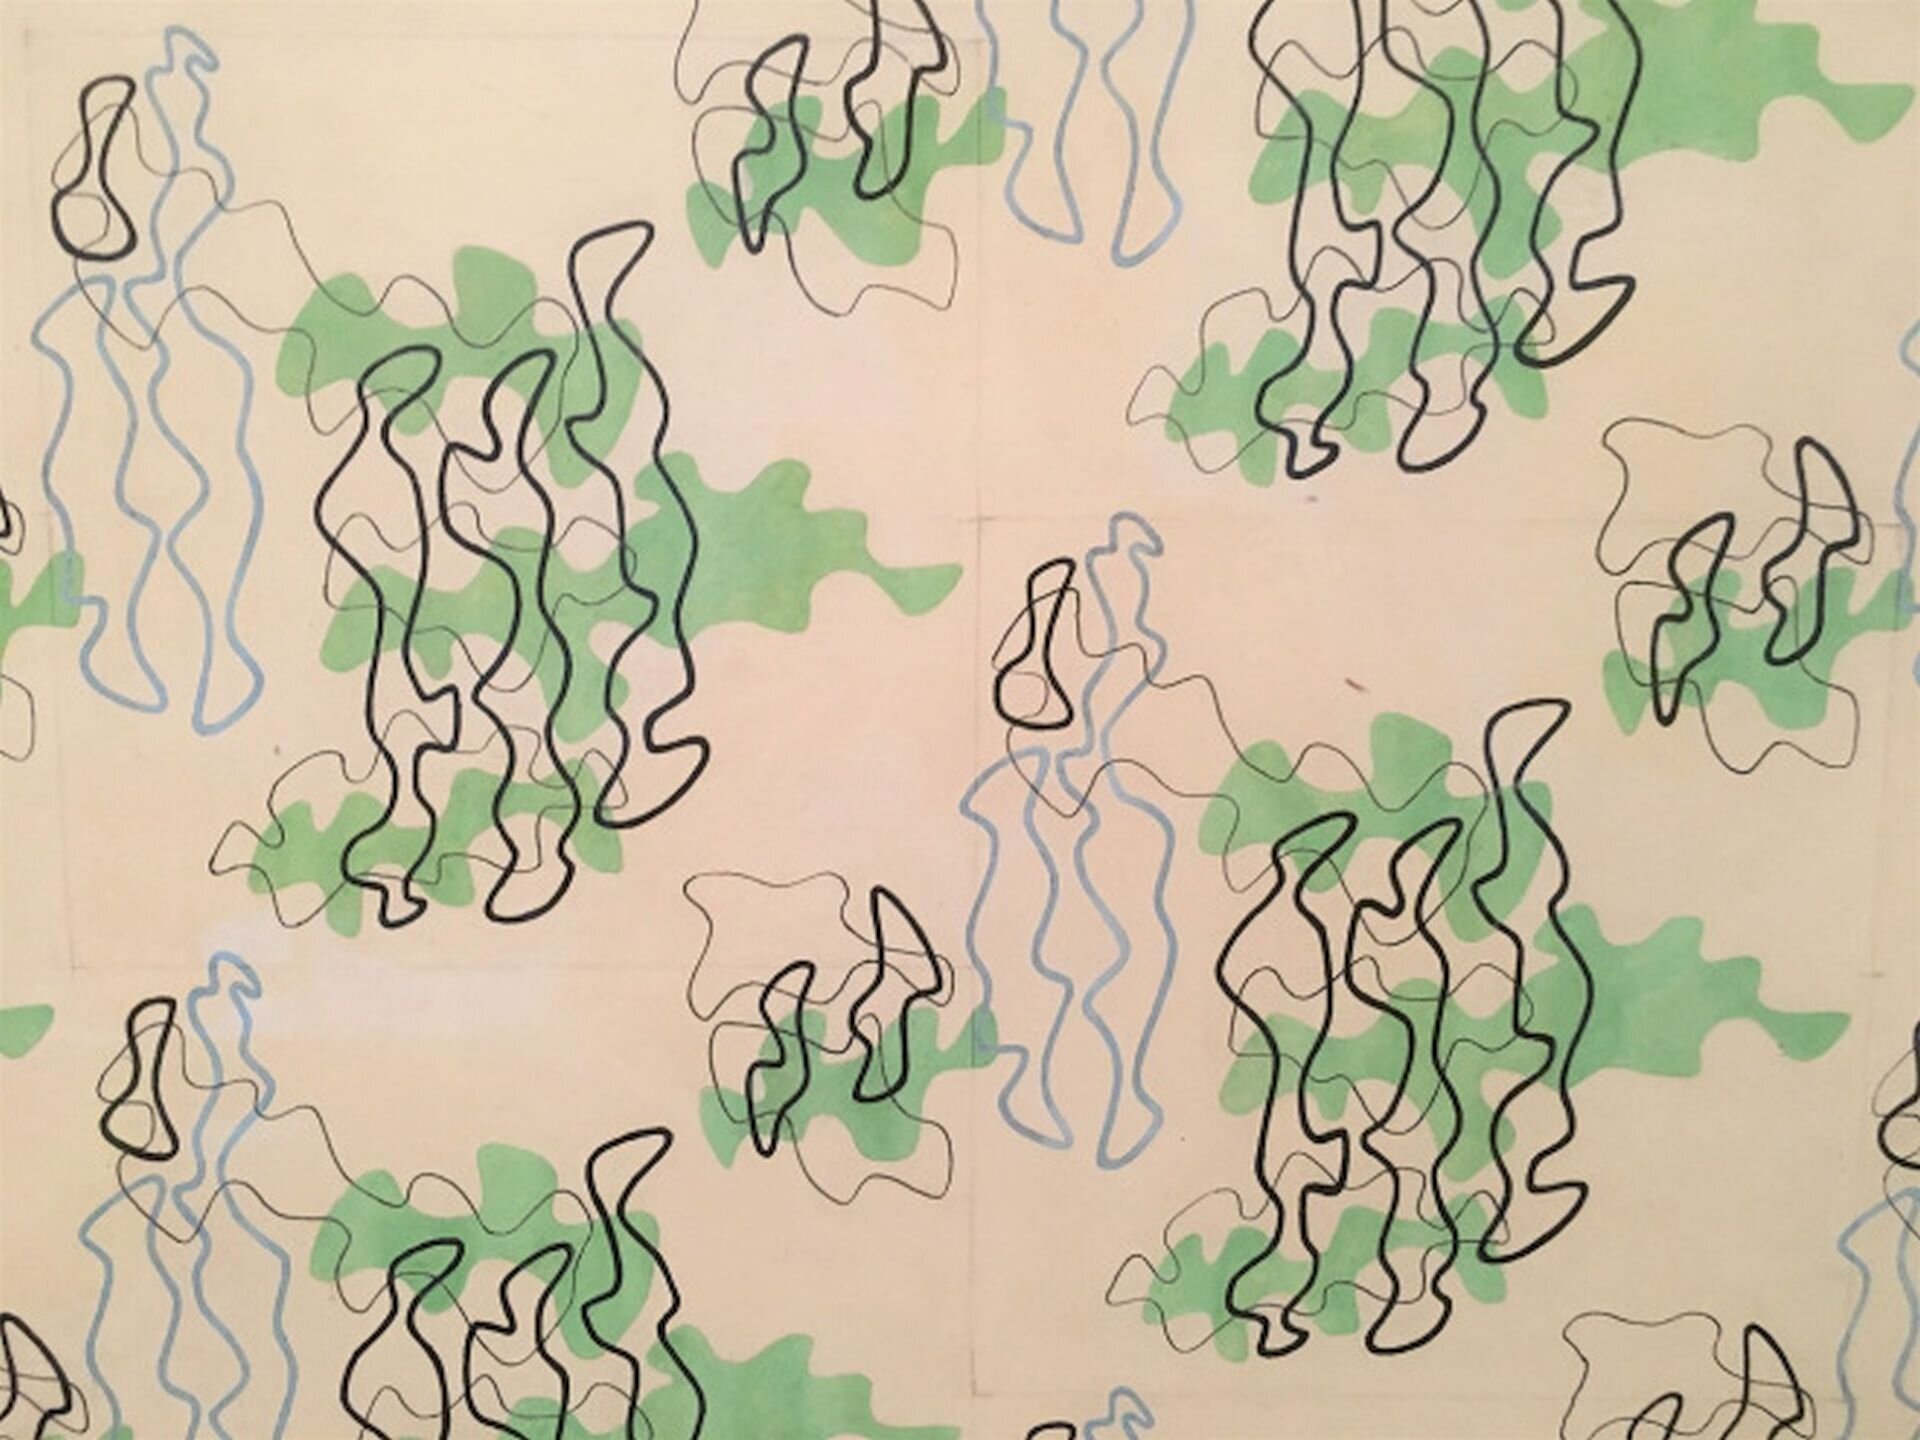 Ilustracja przedstawia projekt tkaniny odzieżowej autorstwa Władysława Strzemińskiego. Na jasnej tkaninie znajdują się linearne wzory. Szare, czarne i brązowe linie nachodzą na siebie i tworzą nieregularne, podłużne kształty. Poza linearnymi obrysami tkaninę dekorują także zielone plamy o podobnych kształtach.